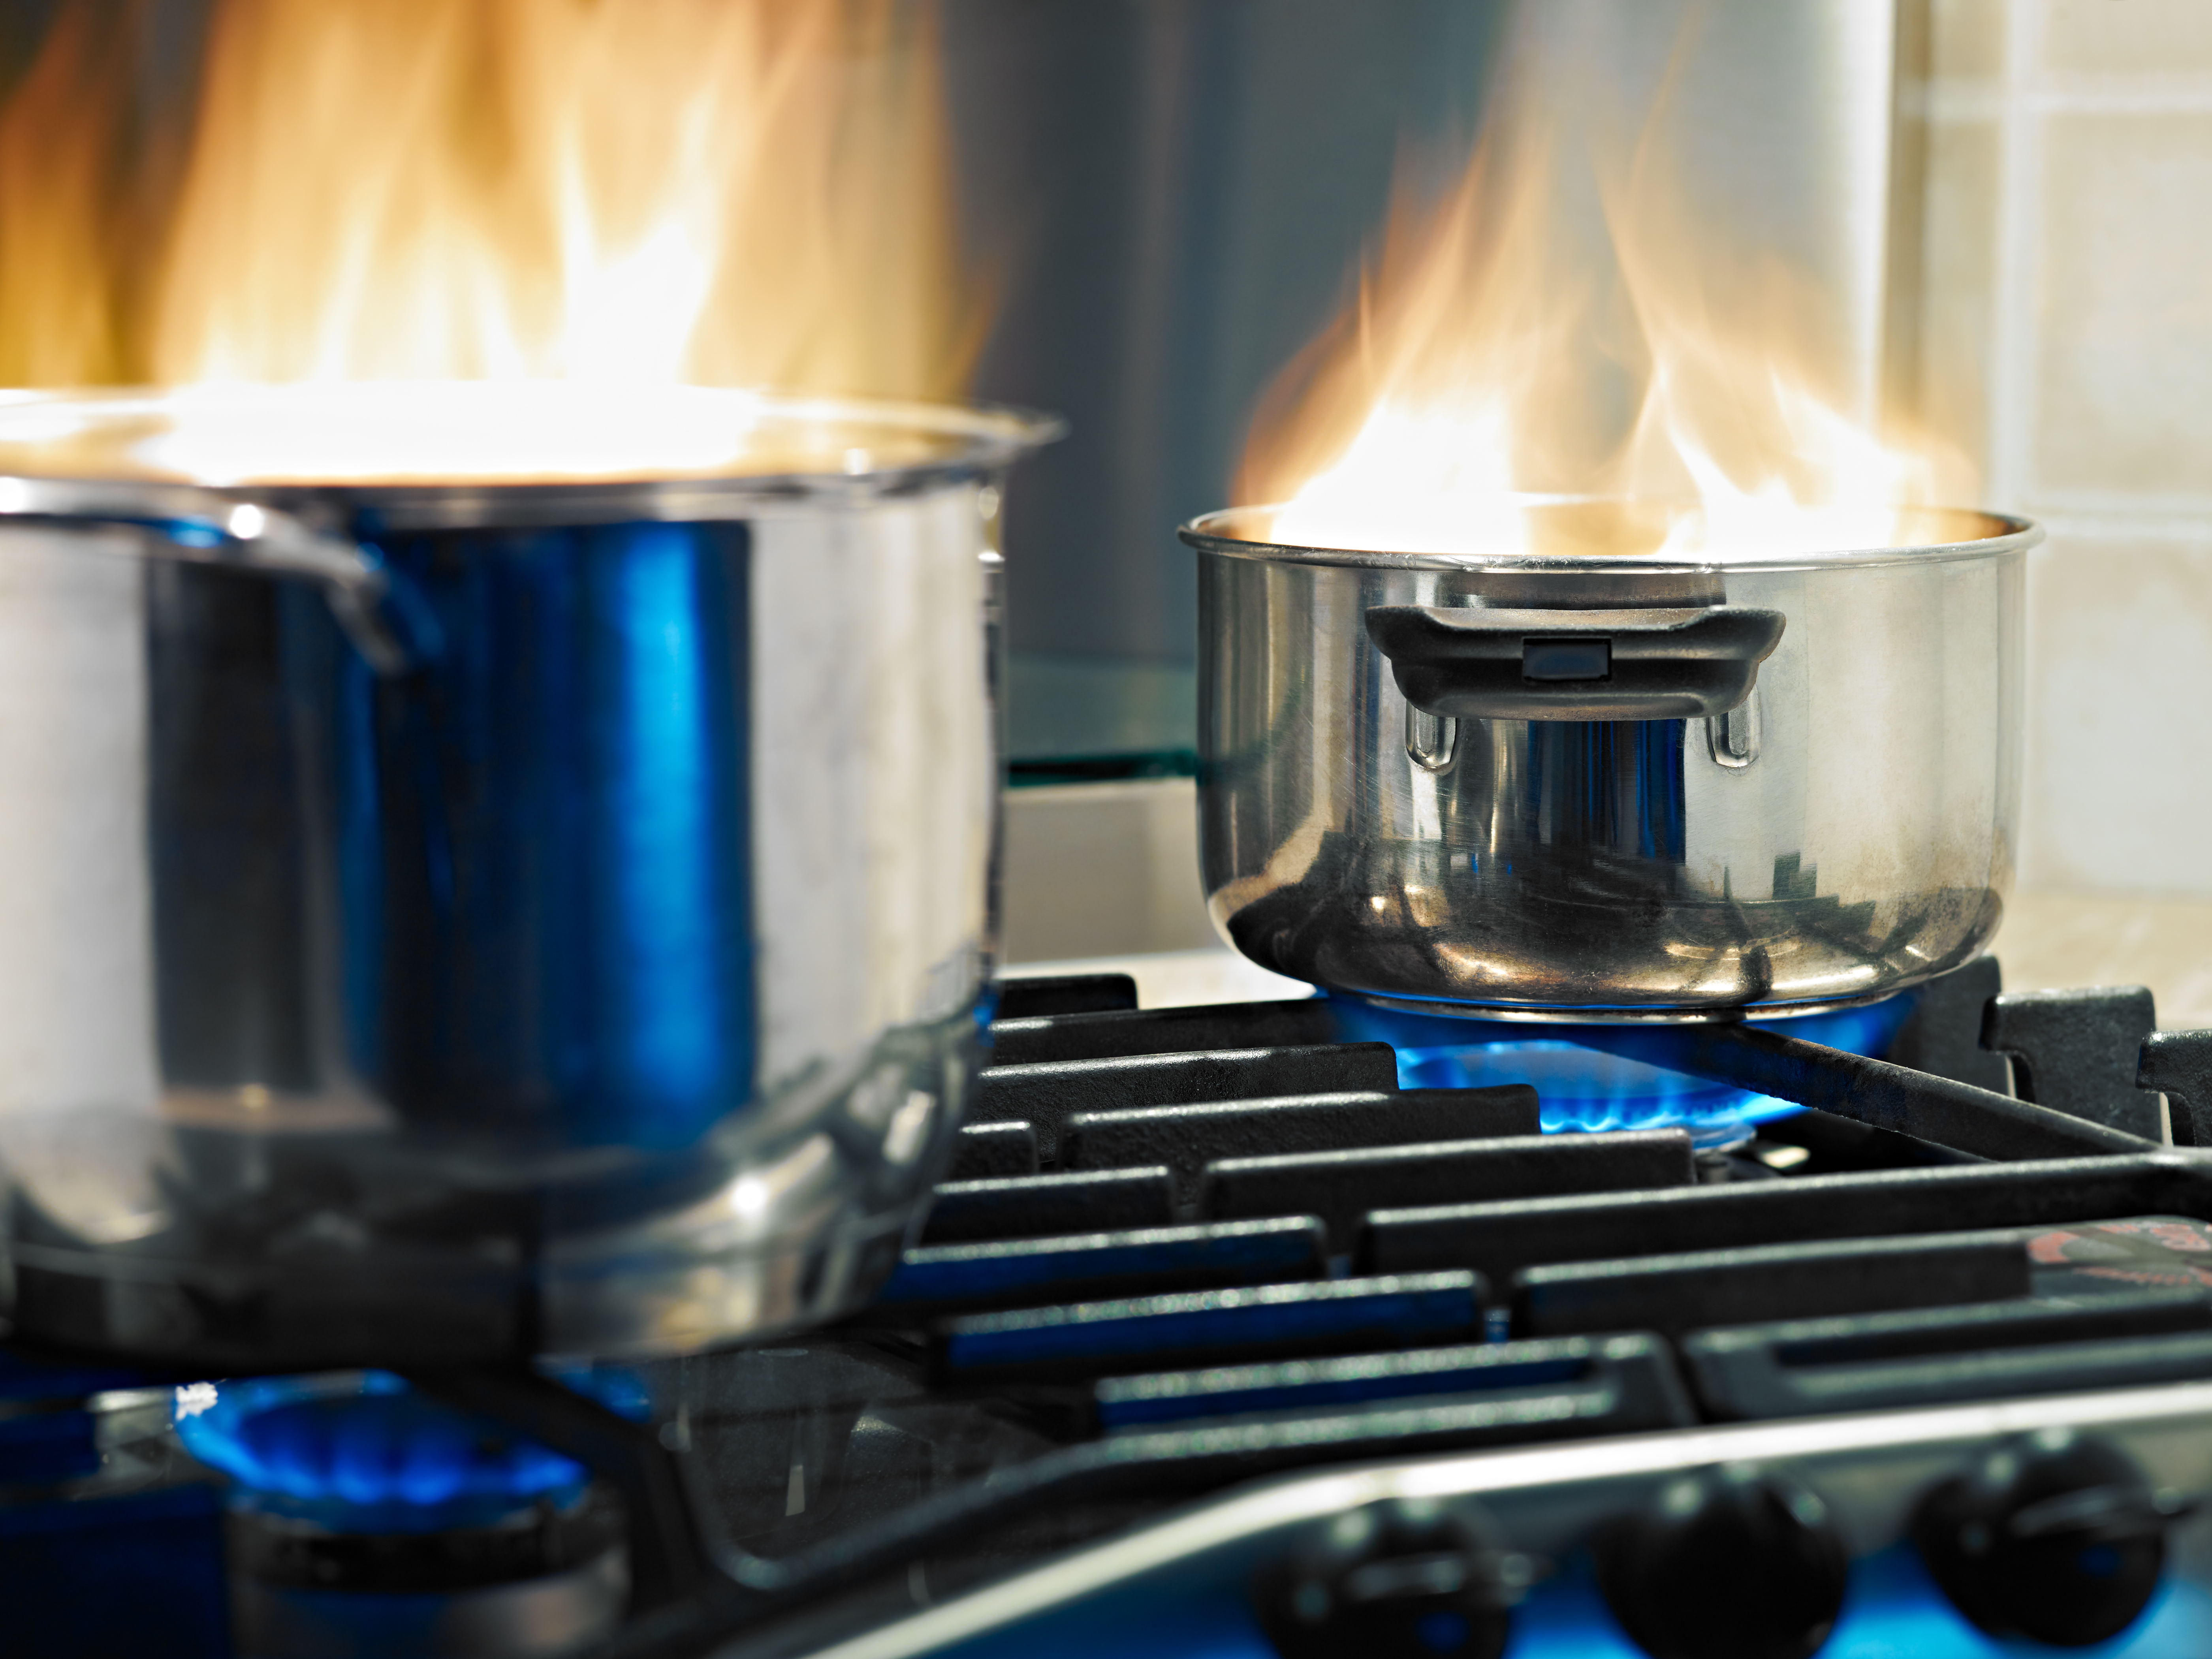 pots on stove fire hazard